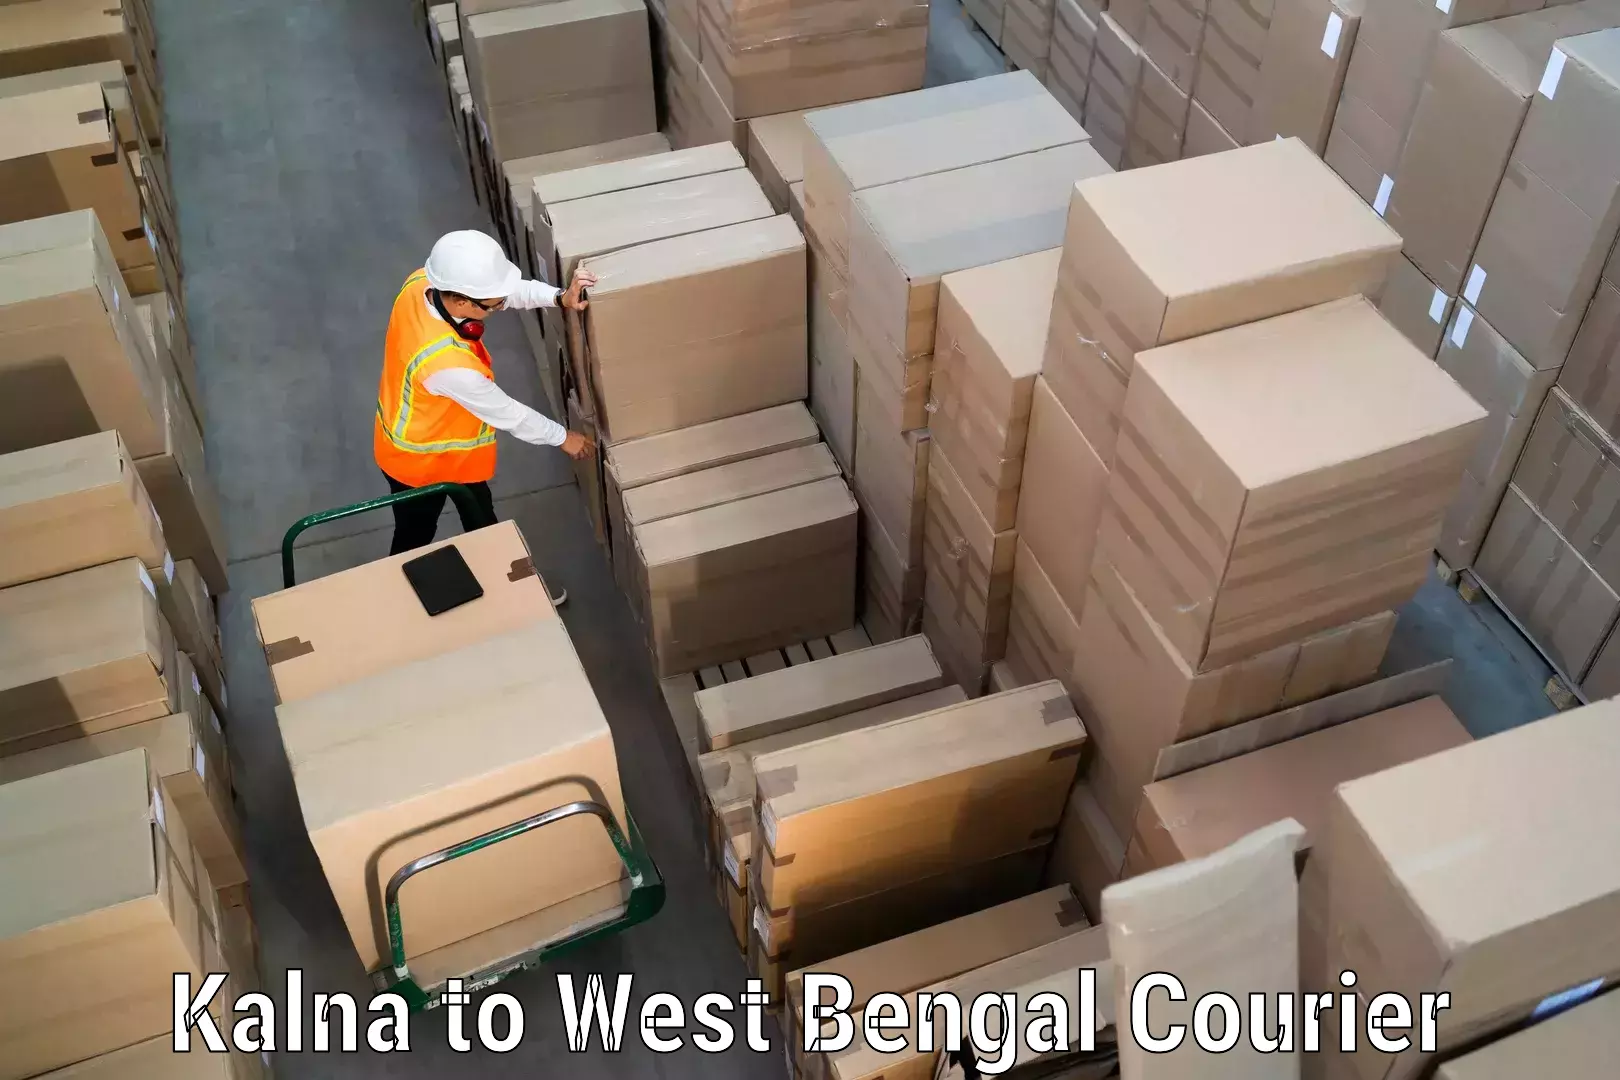 Doorstep delivery service Kalna to West Bengal